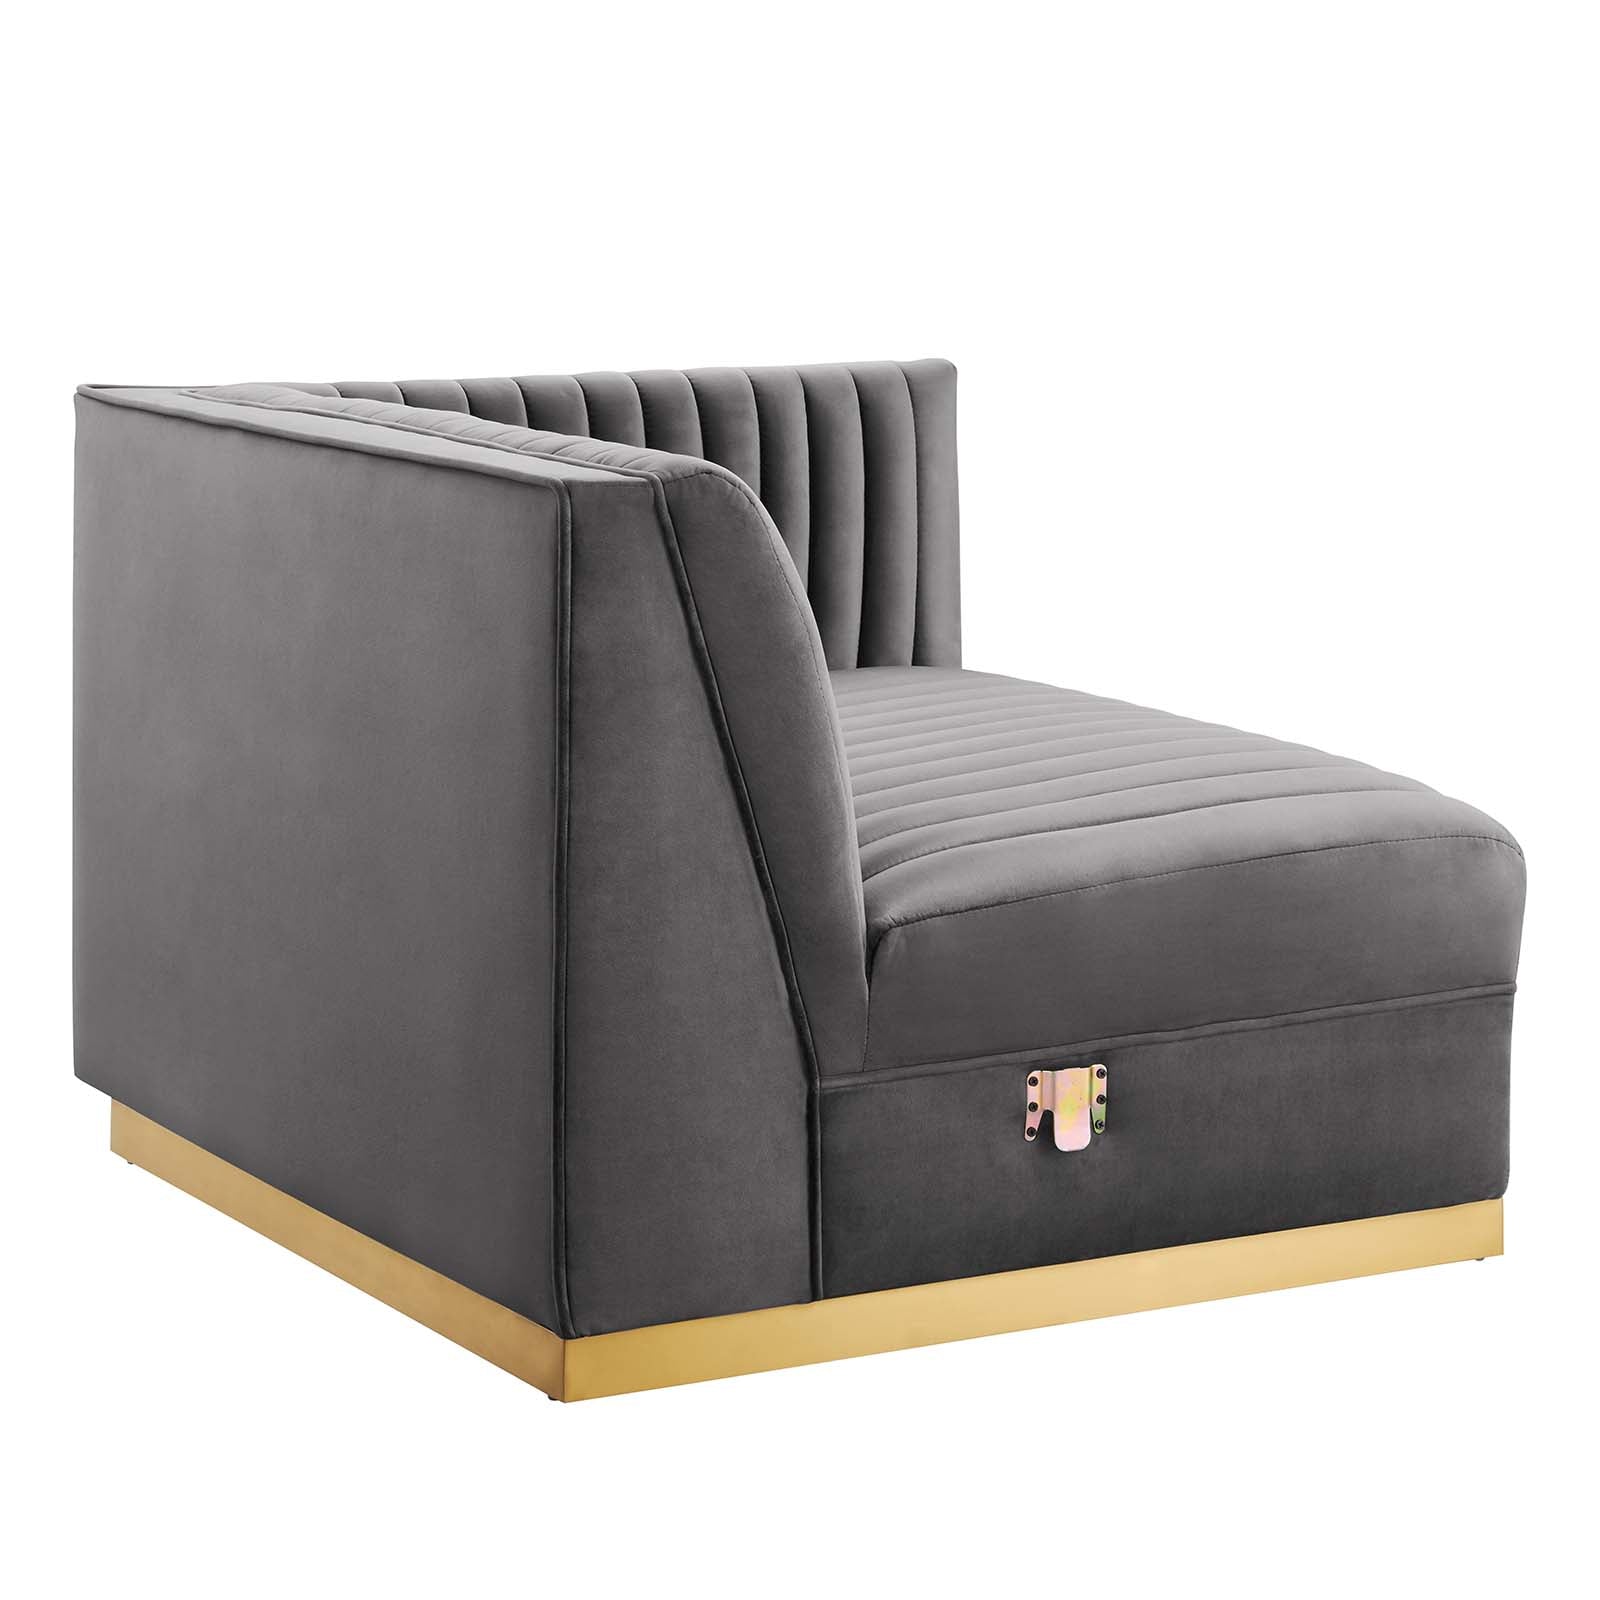 Sanguine Channel Tufted Performance Velvet 4-Seat Modular Sectional Sofa - East Shore Modern Home Furnishings